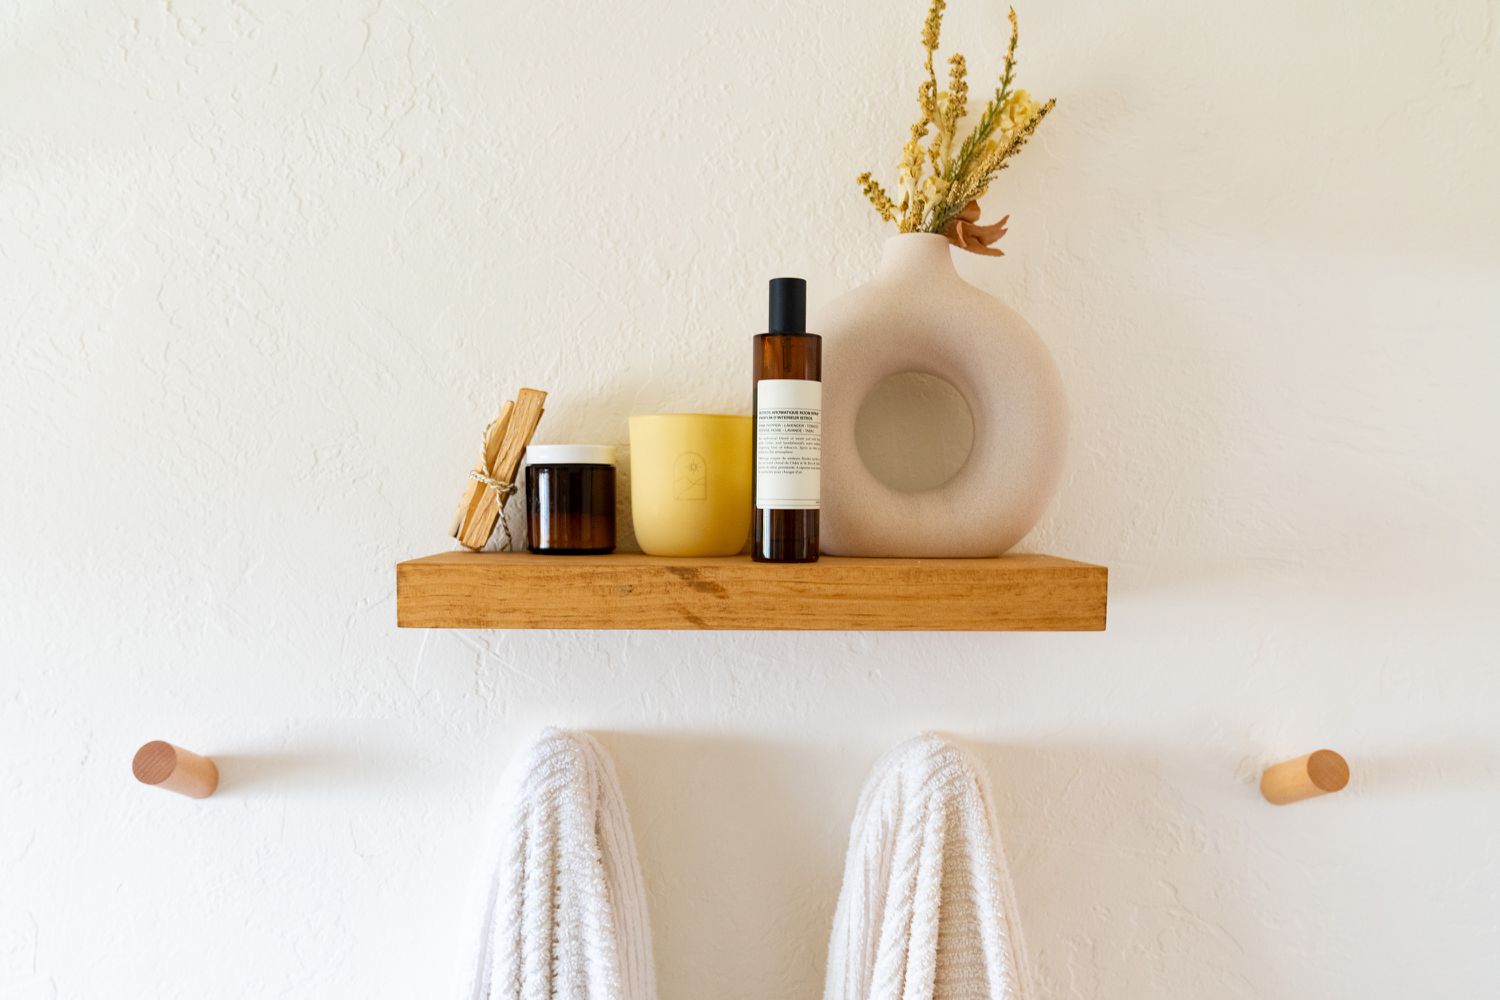 Kleines Holzbadezimmerregal mit Gegenständen oben drauf und Holzklammern, an denen Handtücher hängen